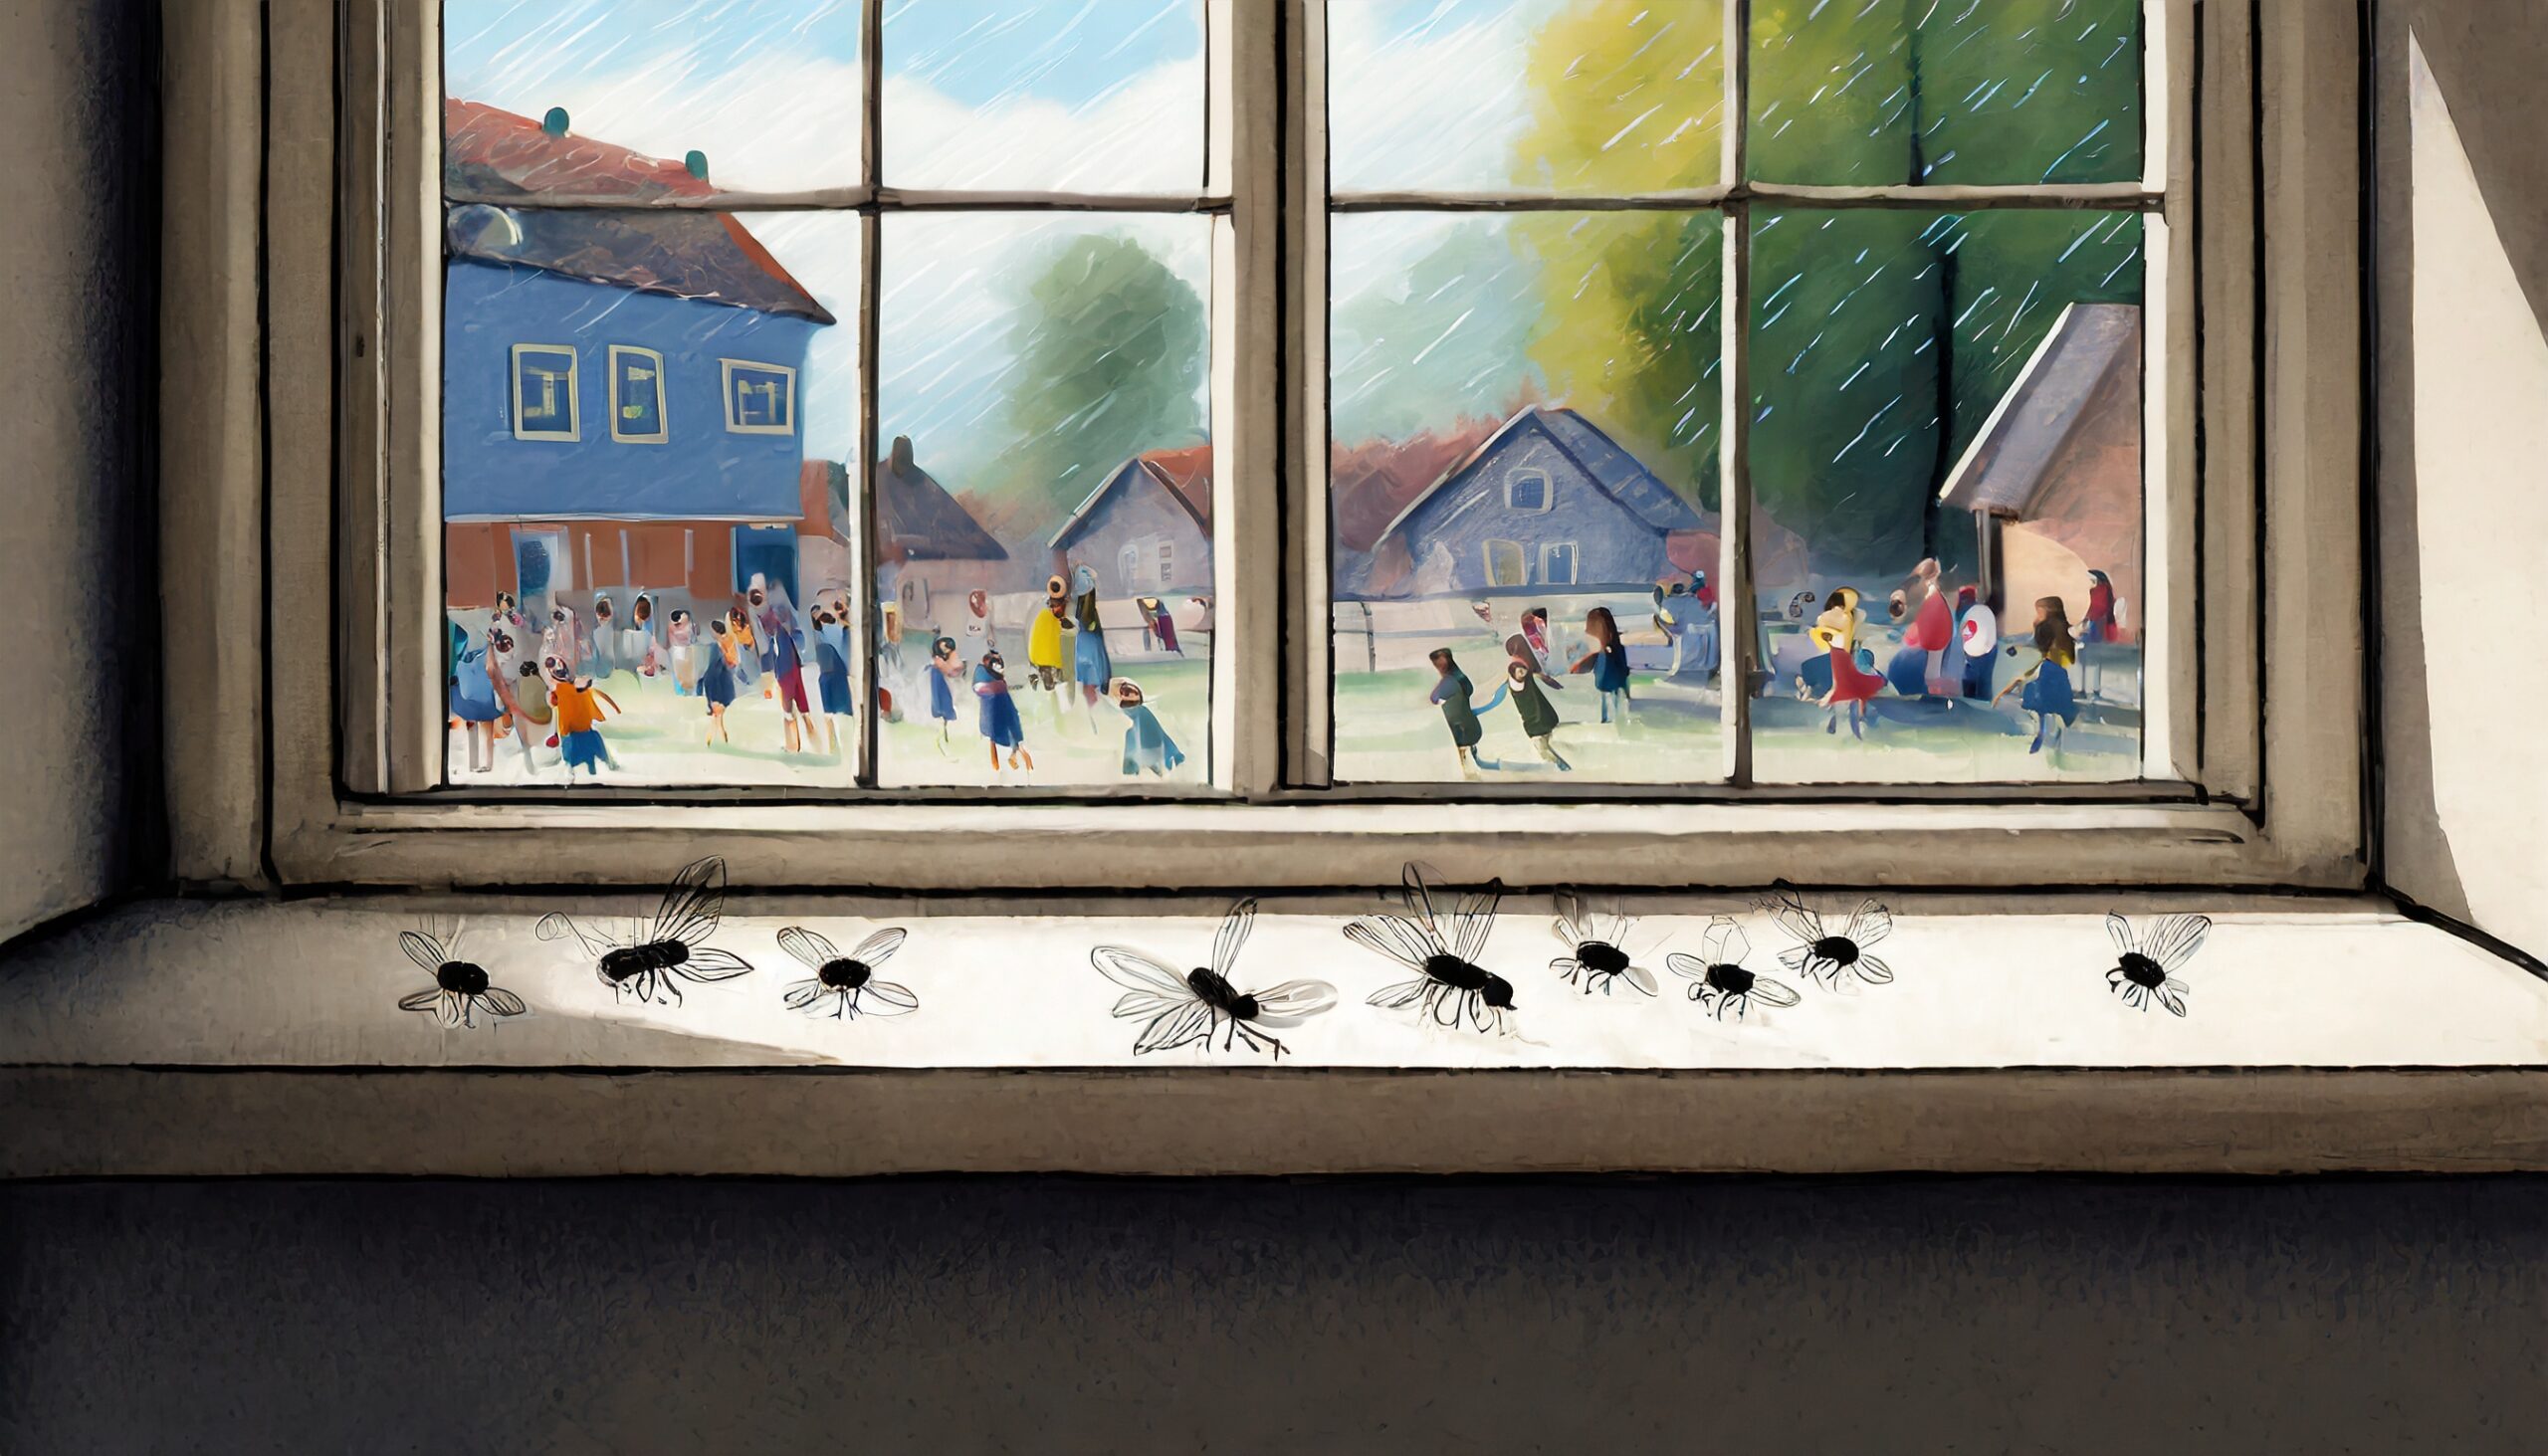 vinduspost med døde fluer. Utsikt mot en skolegård med lekende barn.